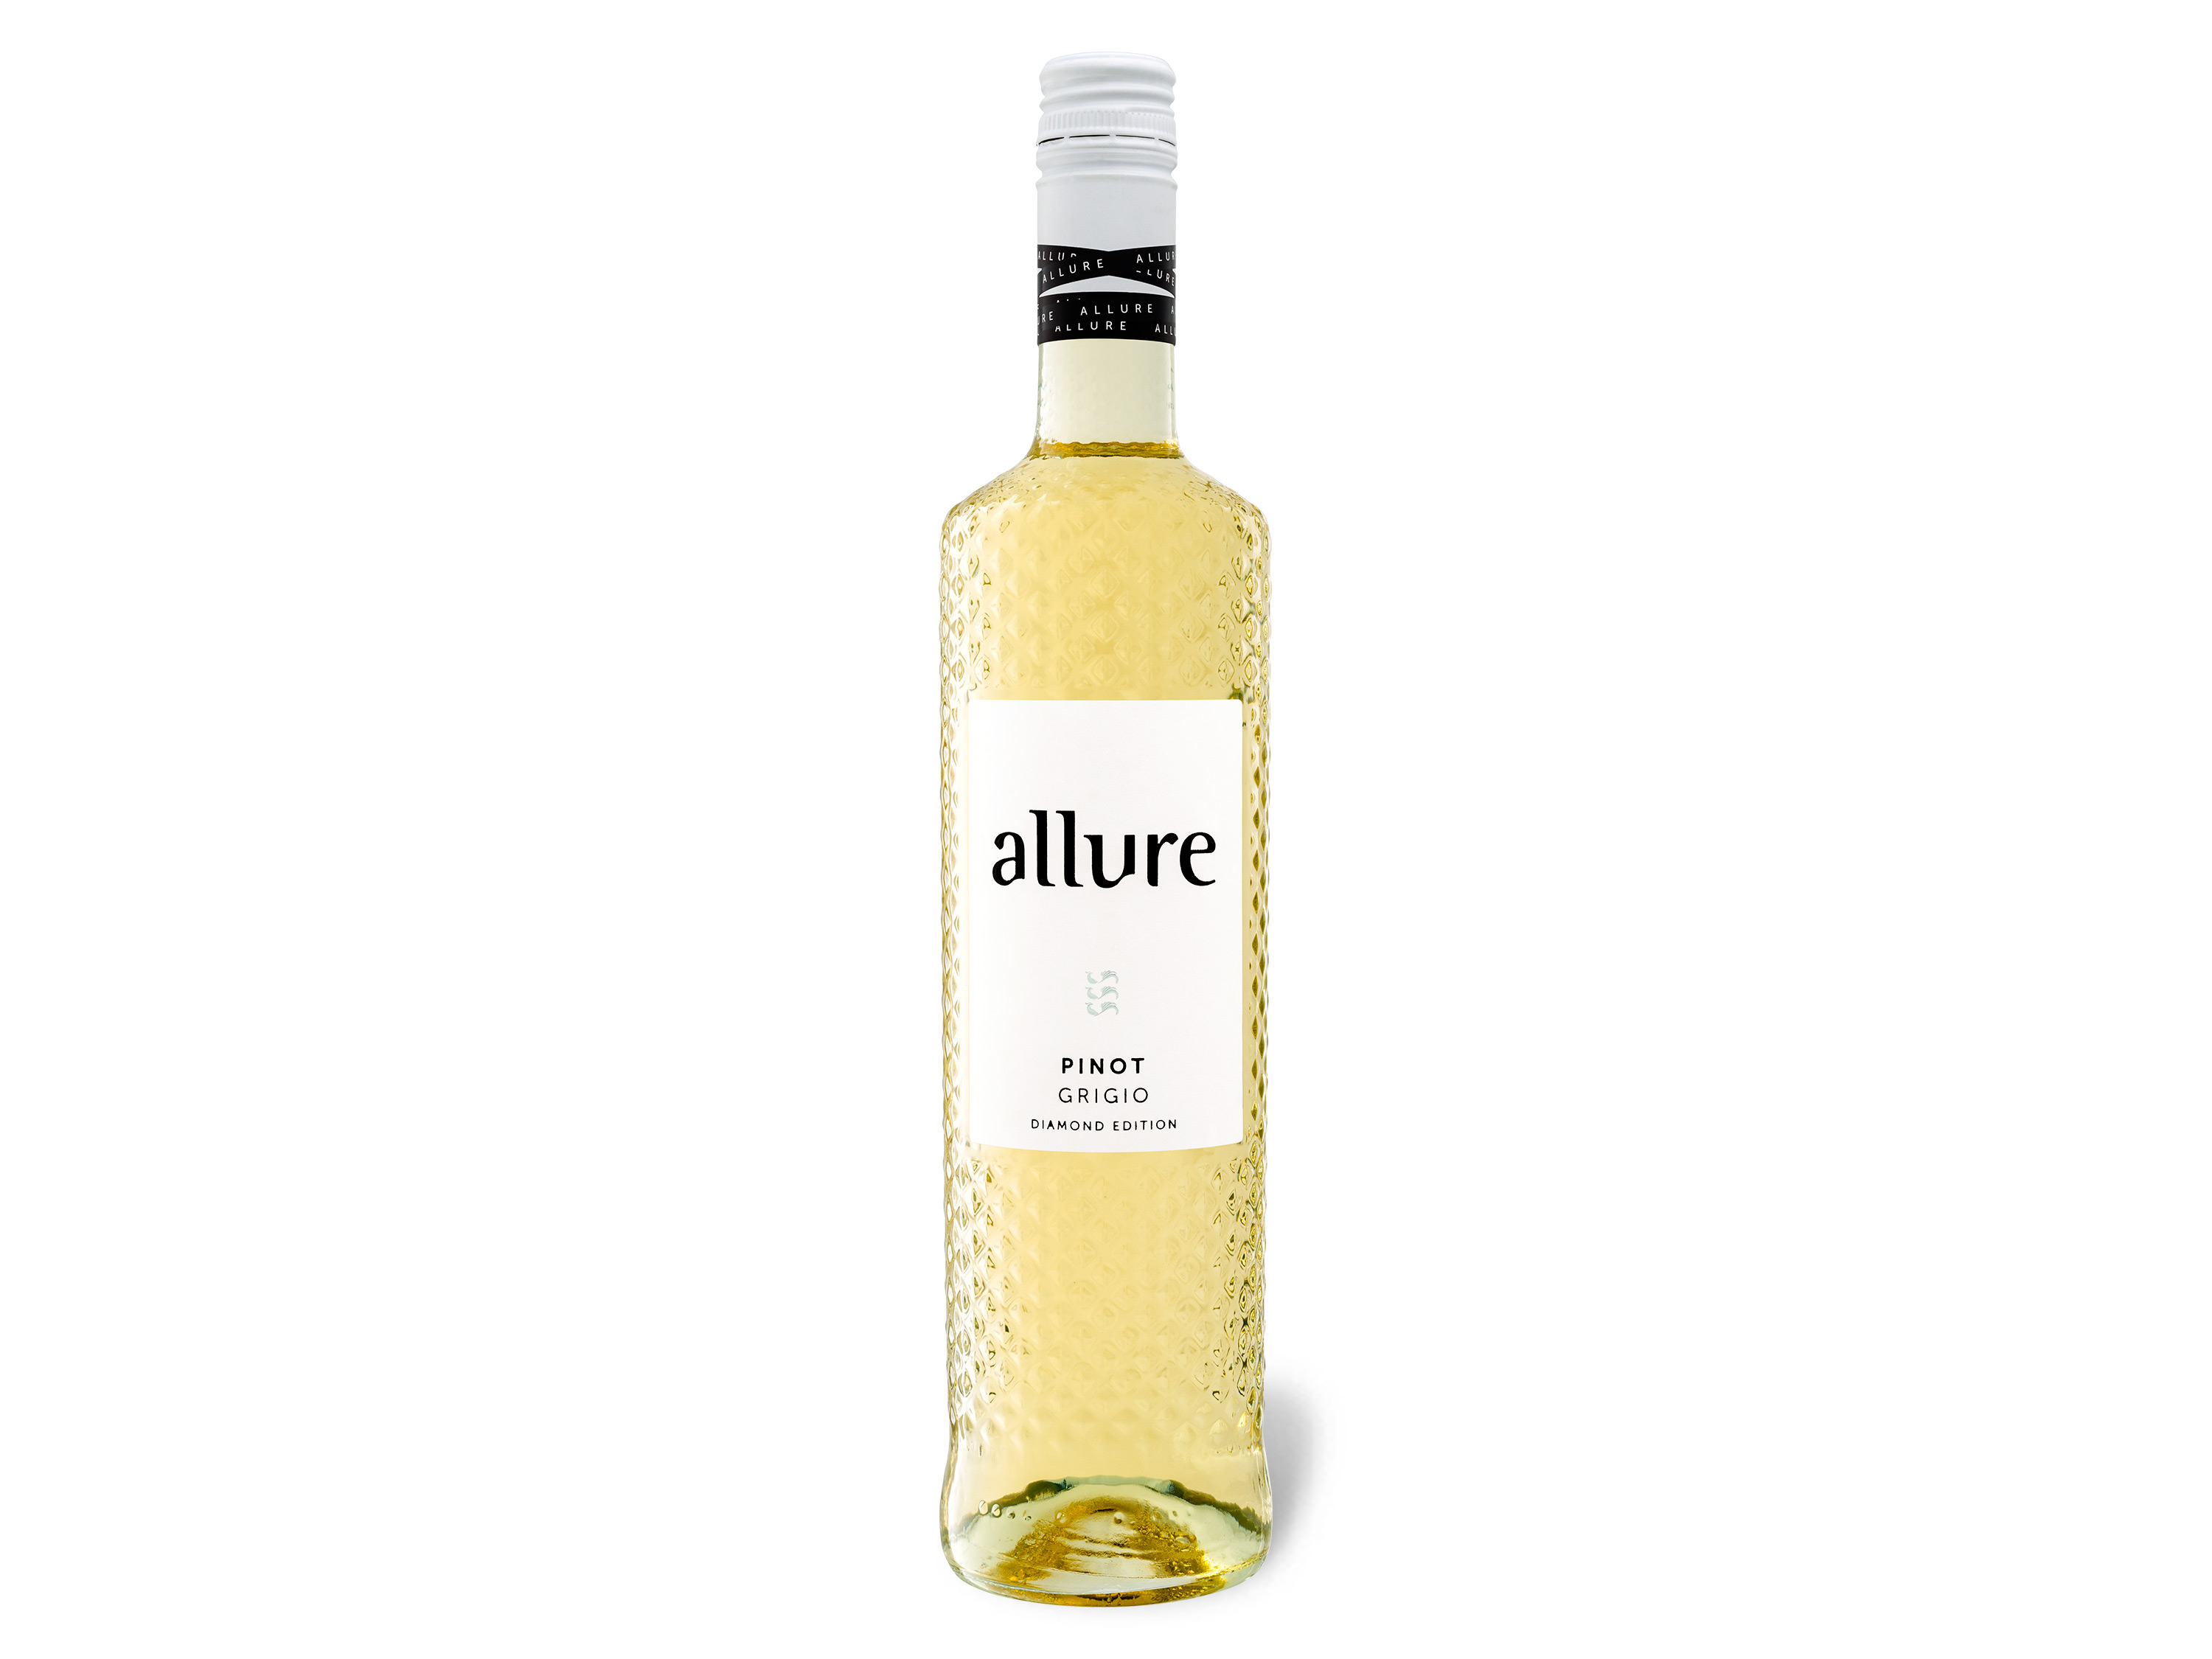 Diamond Allure Weißwein Edition Grigio 2021 Pinot DOC,